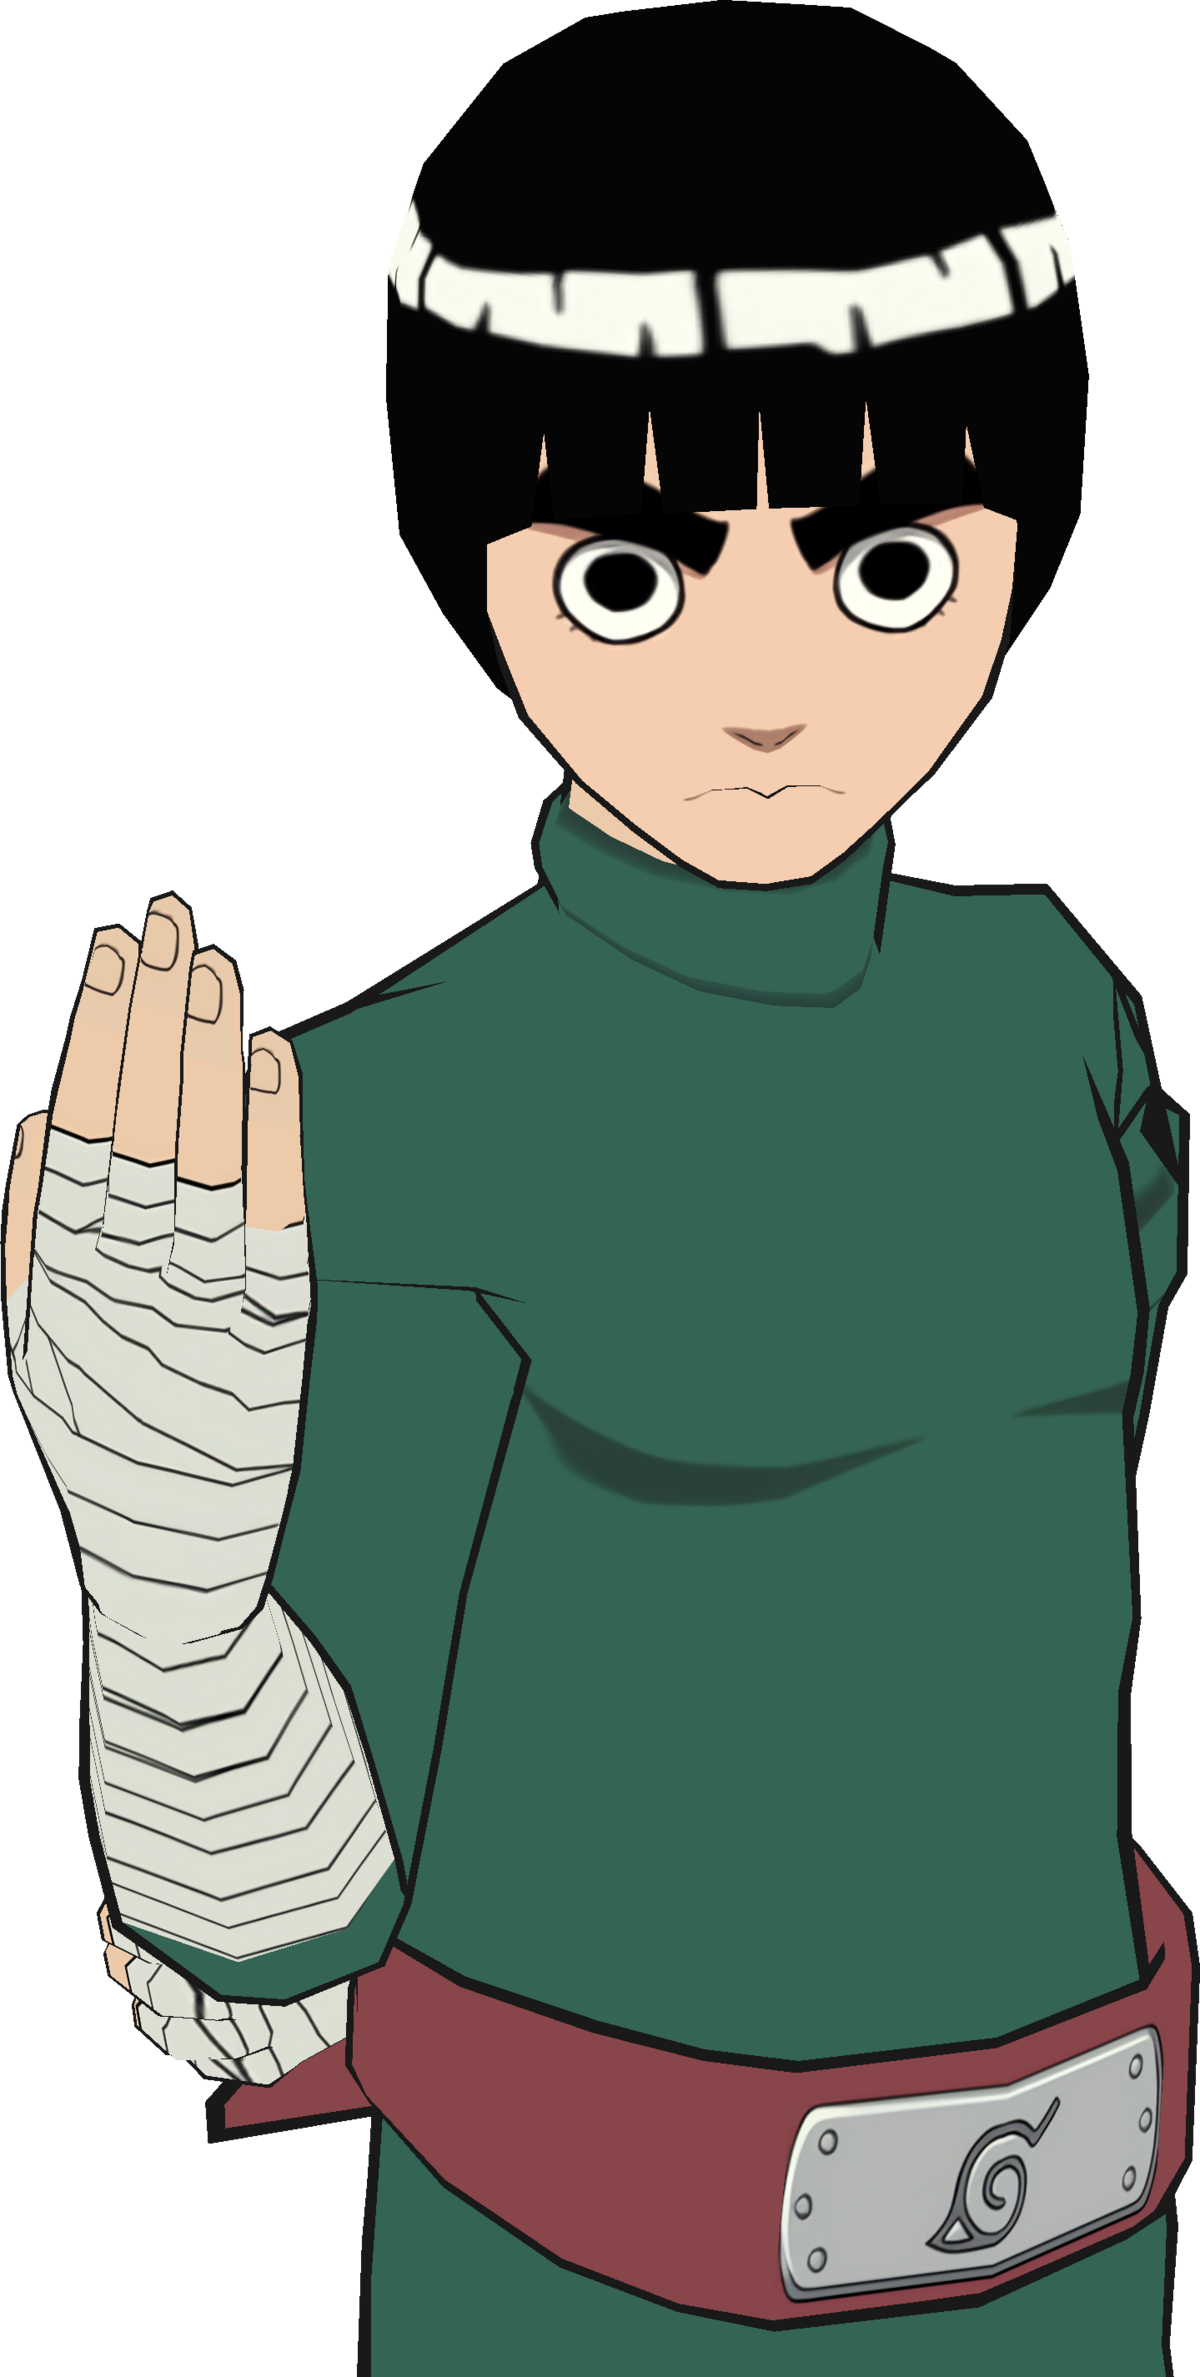 Bleach Vs Naruto - Mizuumi Wiki